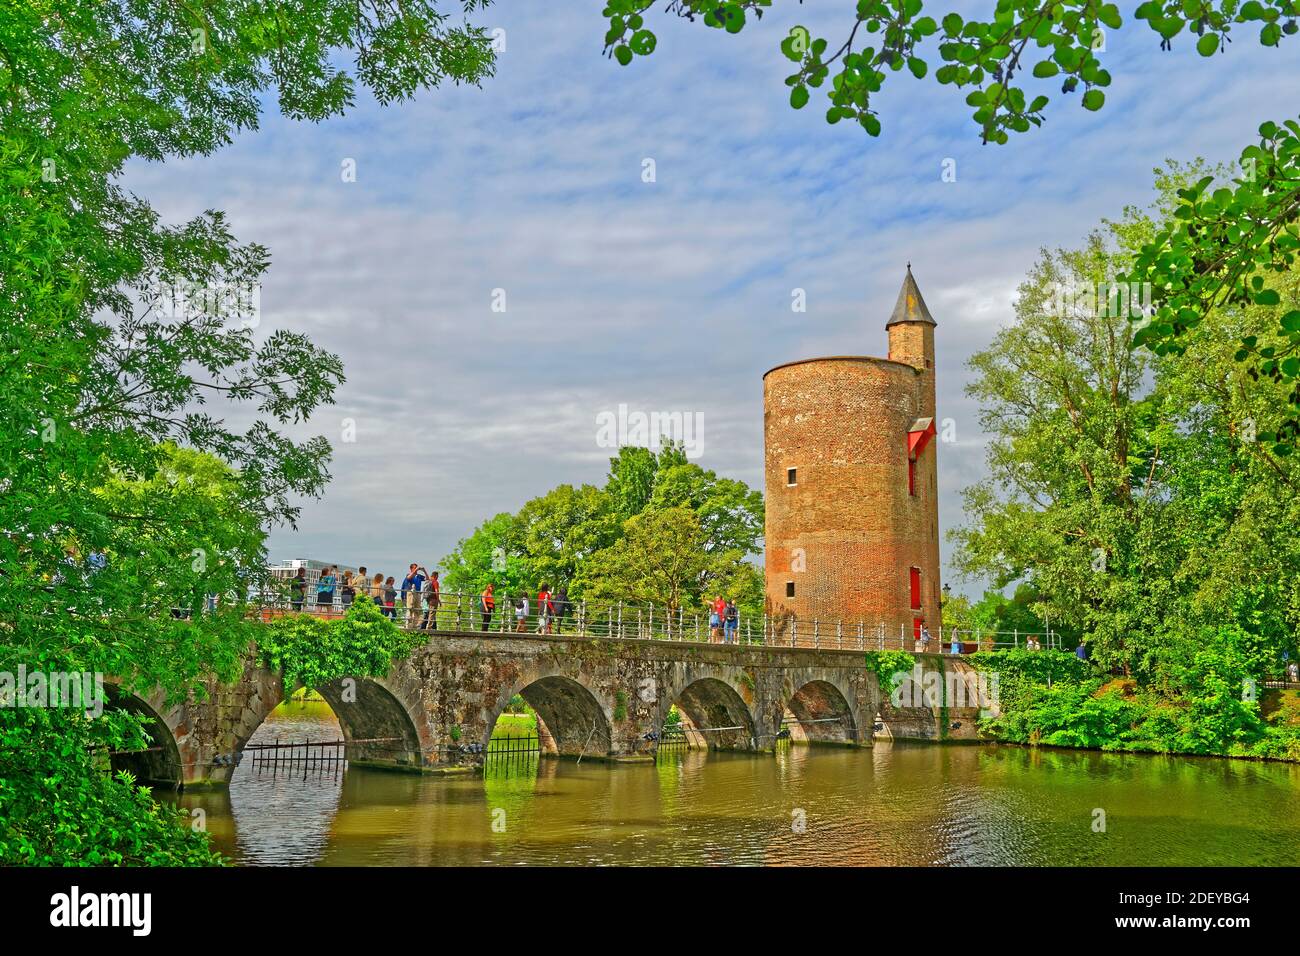 Viaduc sur Minnewater et la Tour poudrière, la vieille ville de Bruges Flandre, Belgique. Banque D'Images